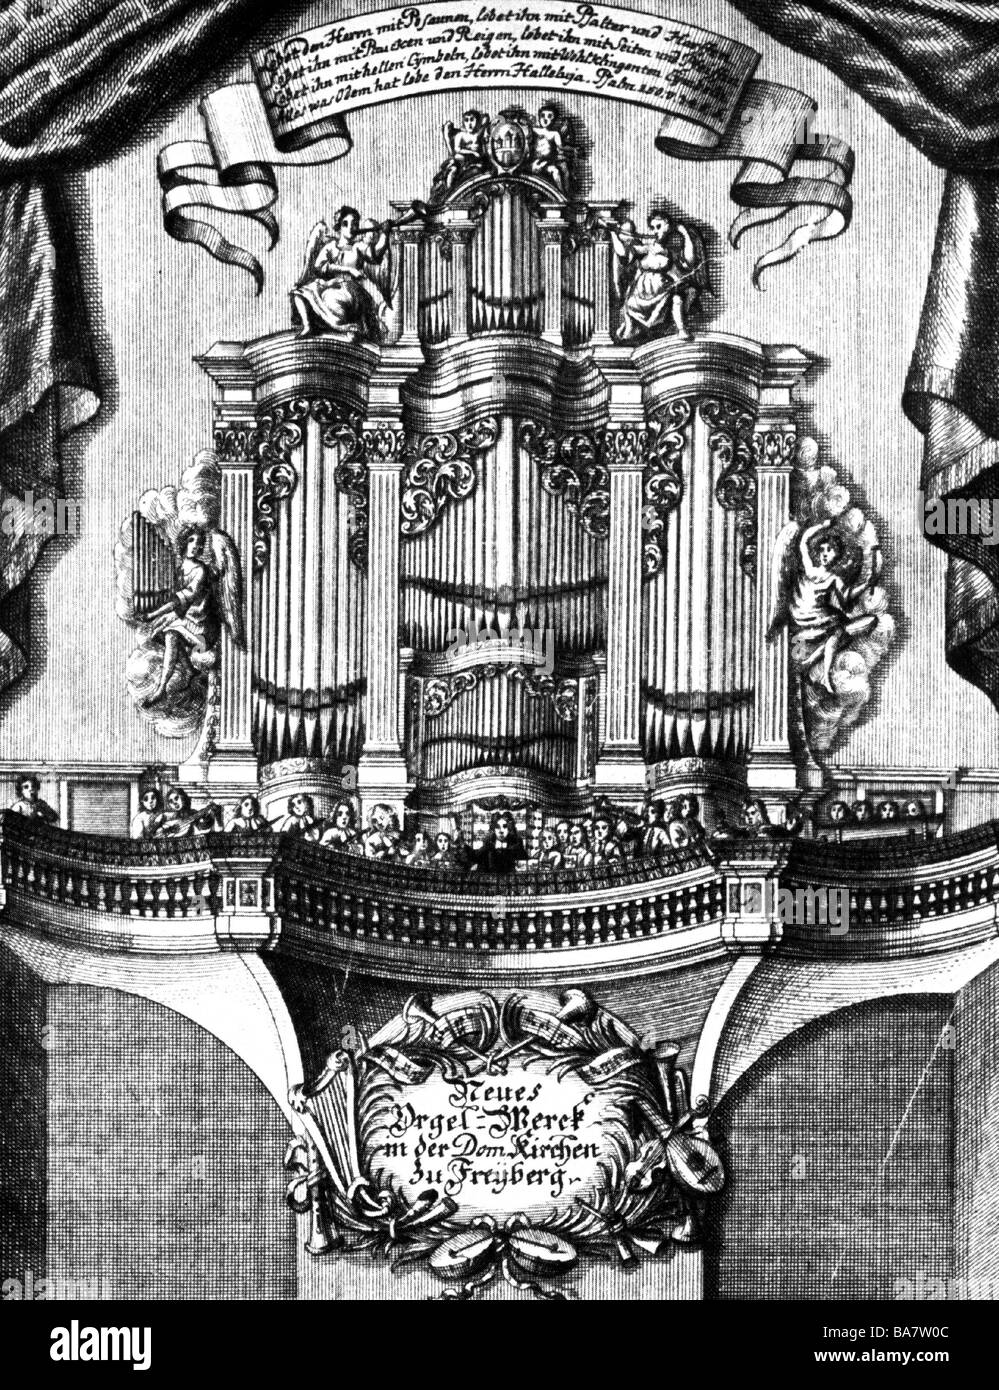 Silbermann, Gottfried, 14.1.1683 - 4.8.1753, costruttore tedesco di organi, opere, il suo organo nella Cattedrale di Friburgo, in Sassonia, incisione su rame, XVIII secolo, artista del diritto d'autore non deve essere cancellata Foto Stock